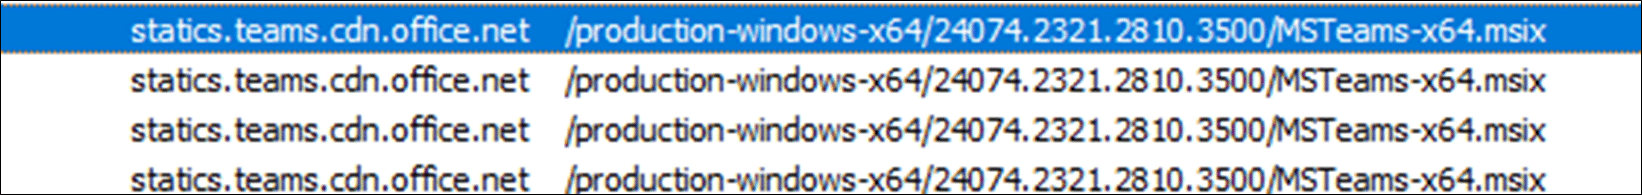 Screenprint of list of MSIX downloads